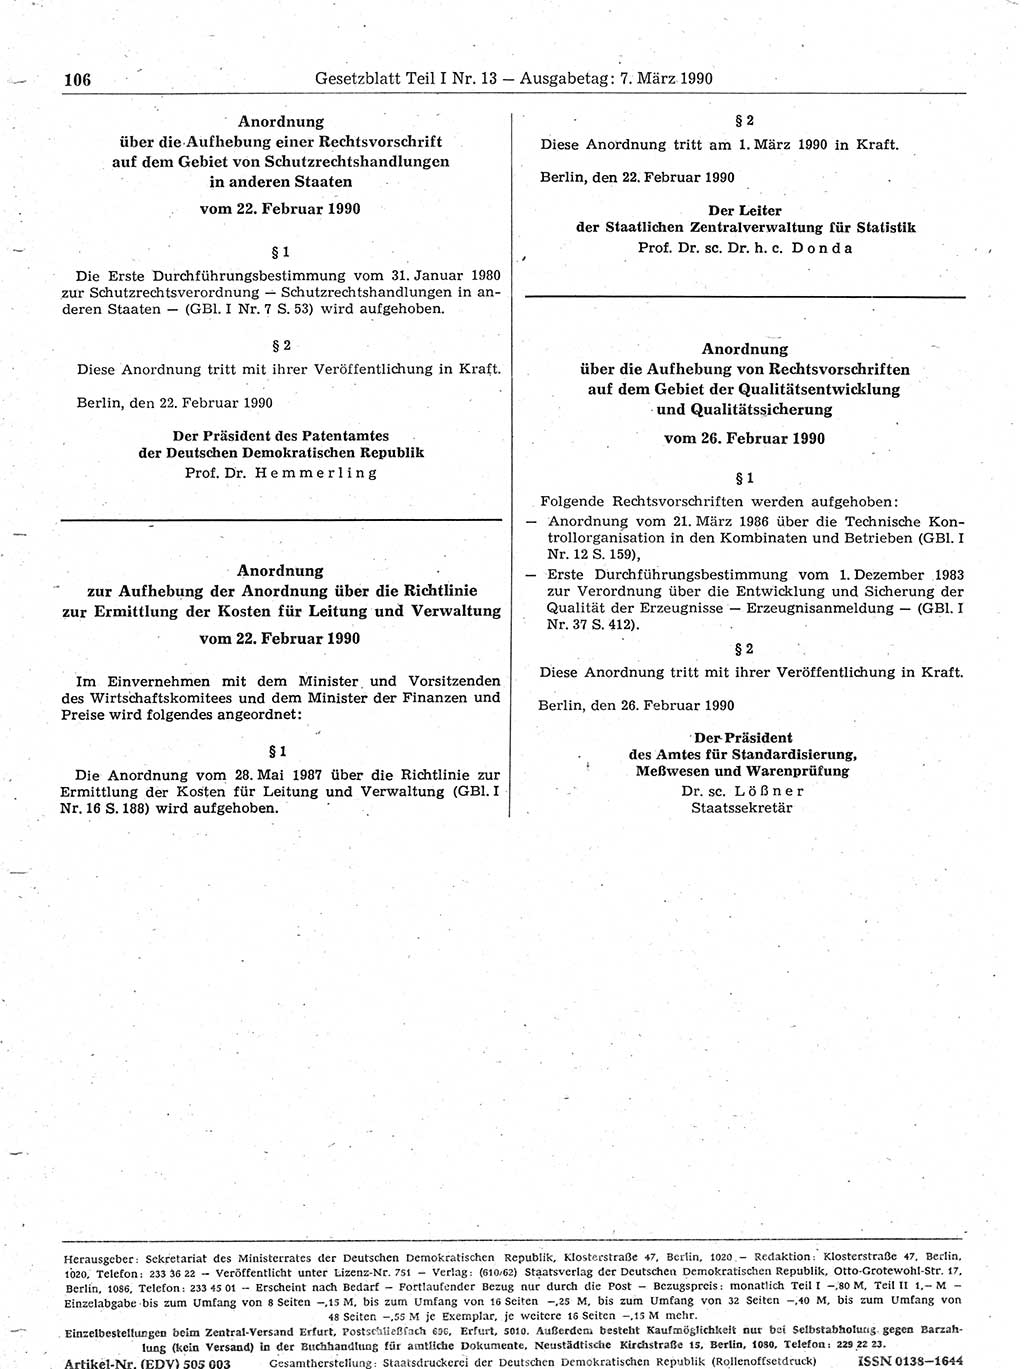 Gesetzblatt (GBl.) der Deutschen Demokratischen Republik (DDR) Teil Ⅰ 1990, Seite 106 (GBl. DDR Ⅰ 1990, S. 106)